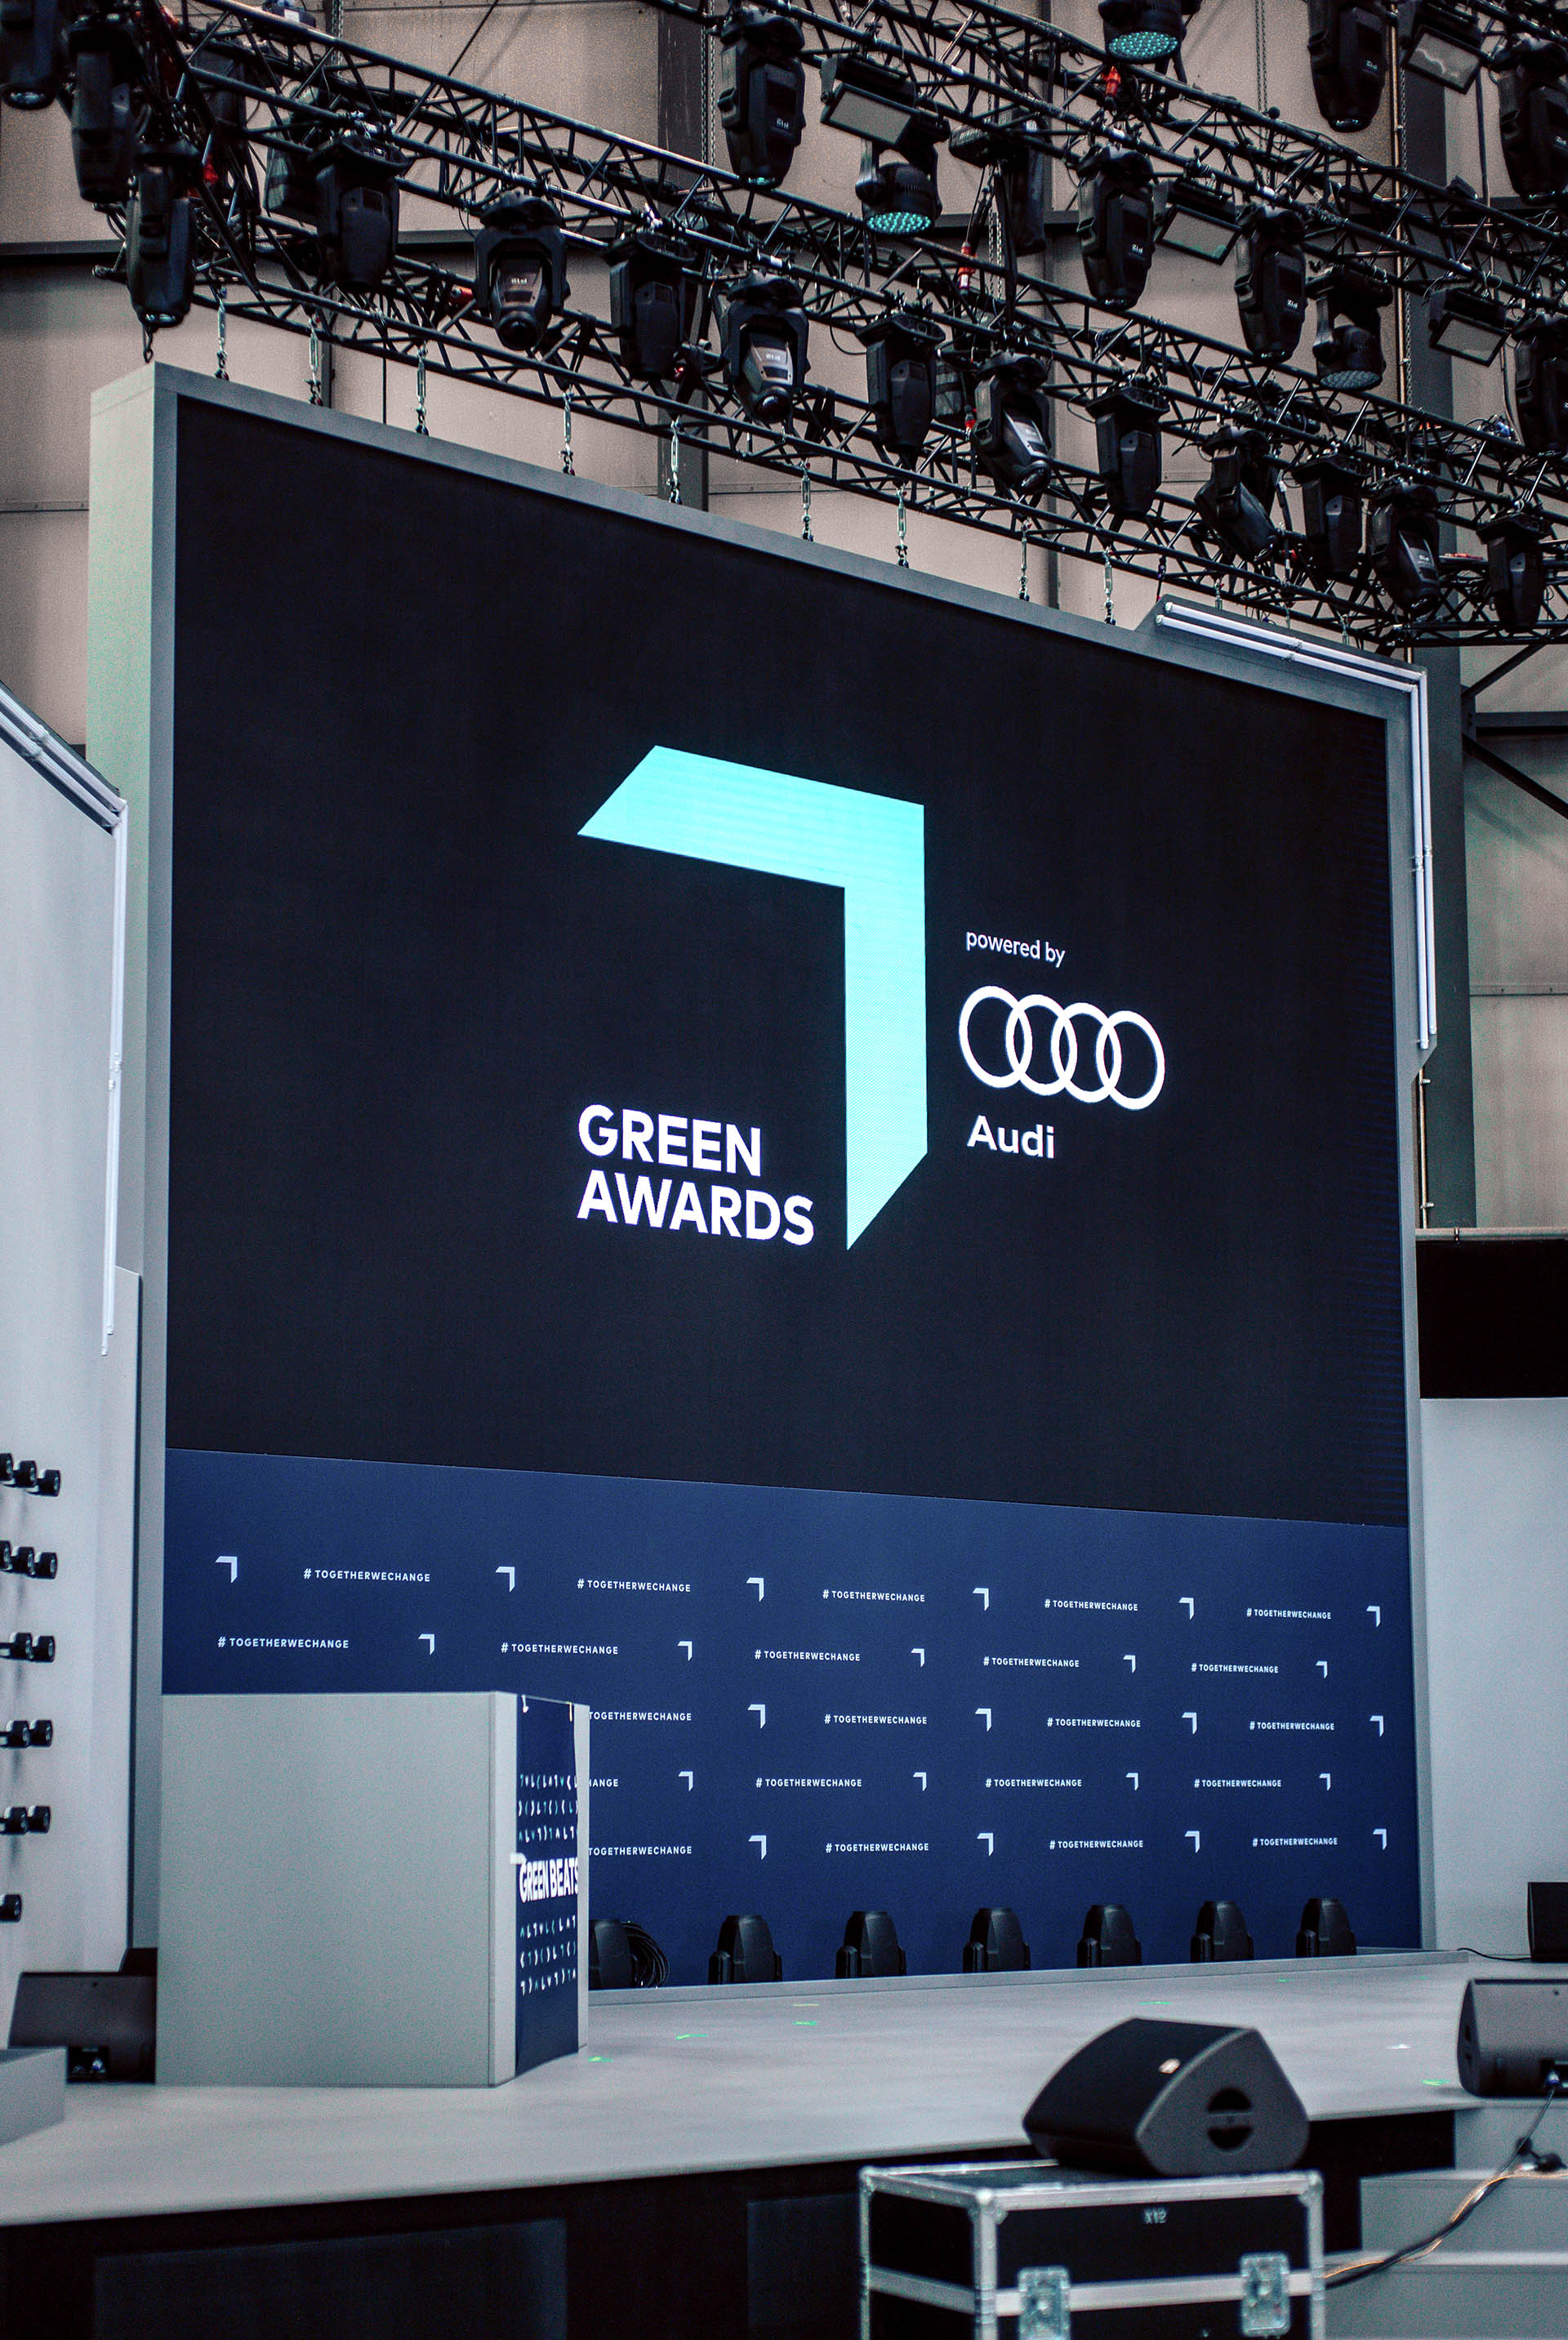 Widoczna jest ściana z logo Audi i Greentech Festival.